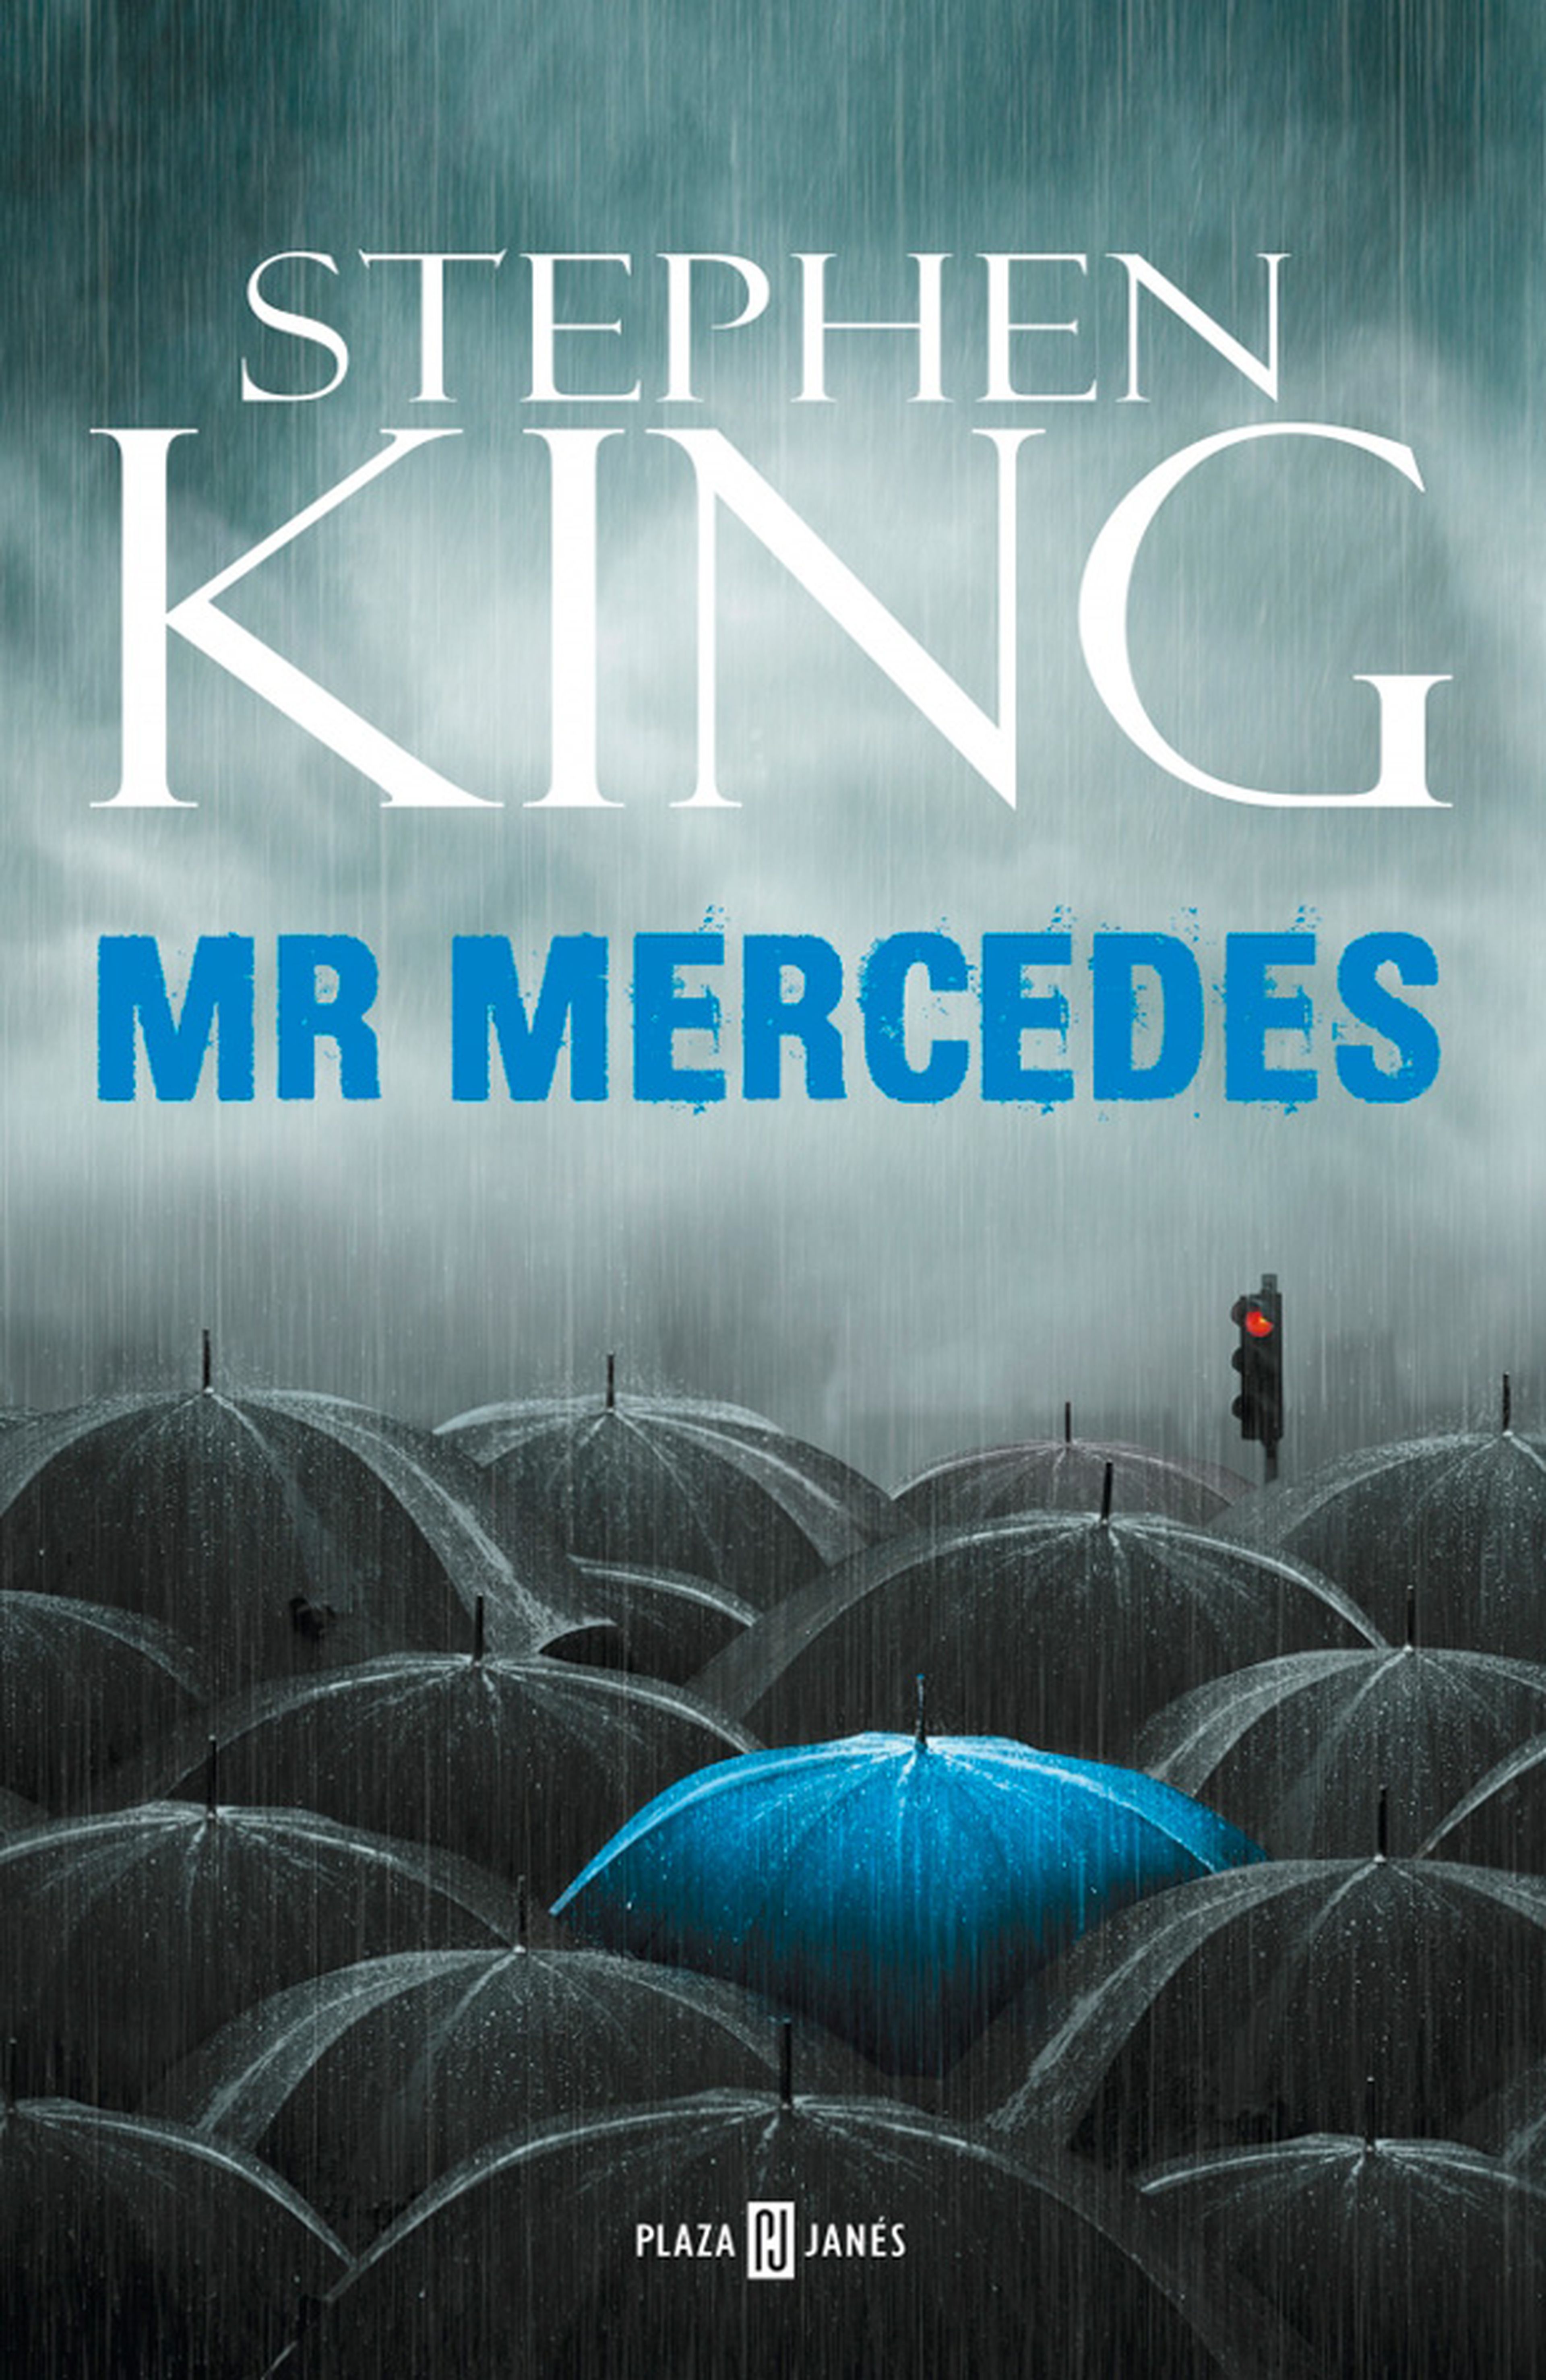 Mr. Mercedes - Nueva miniserie de la novela de Stephen King